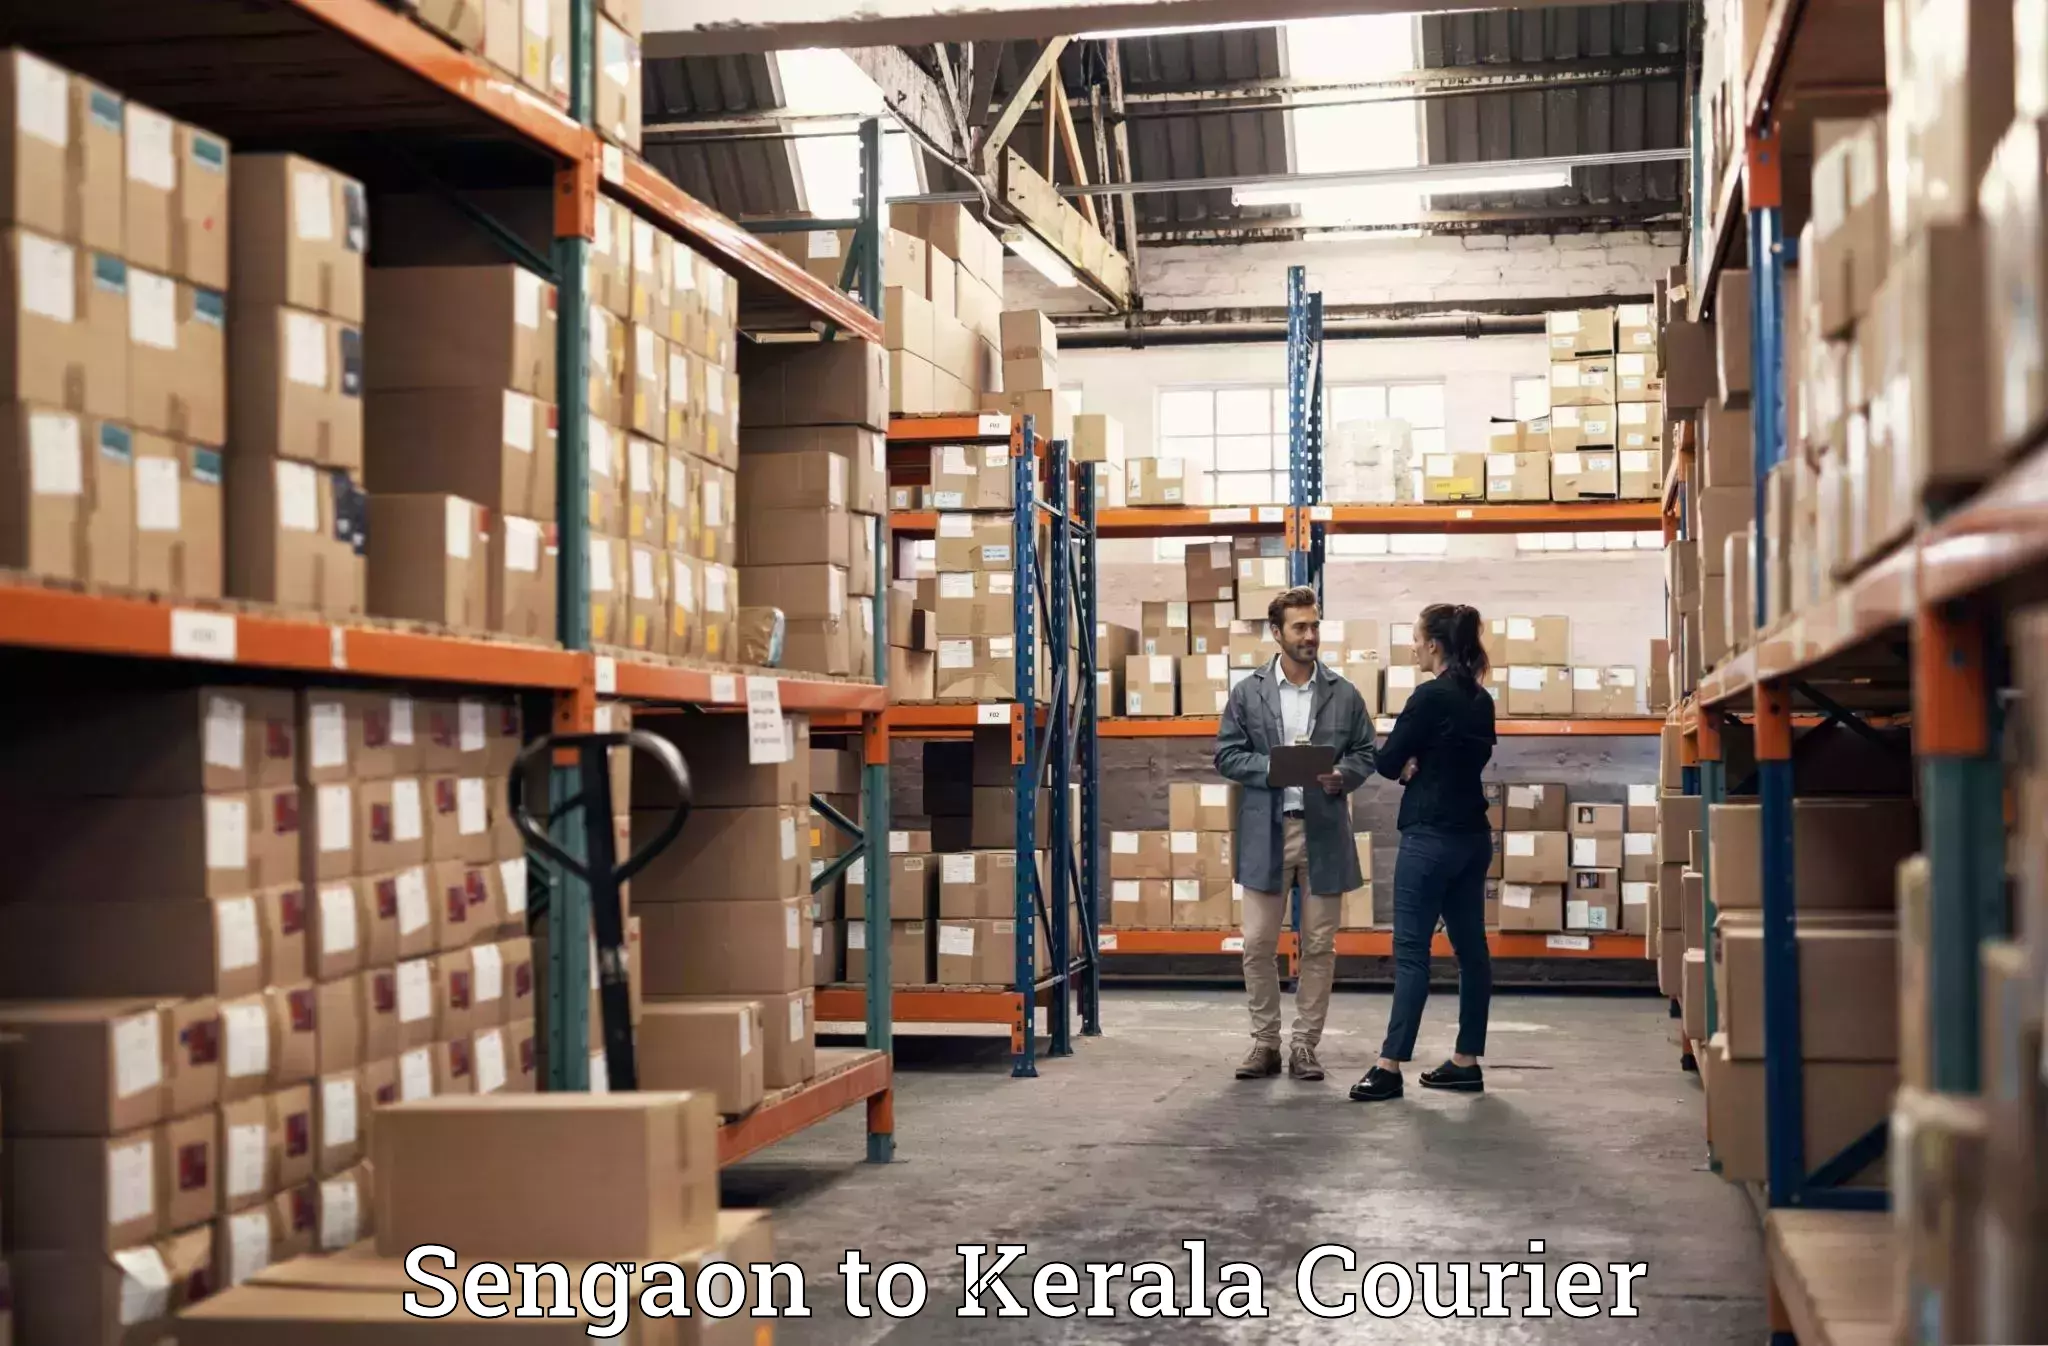 Luggage forwarding service Sengaon to Kerala